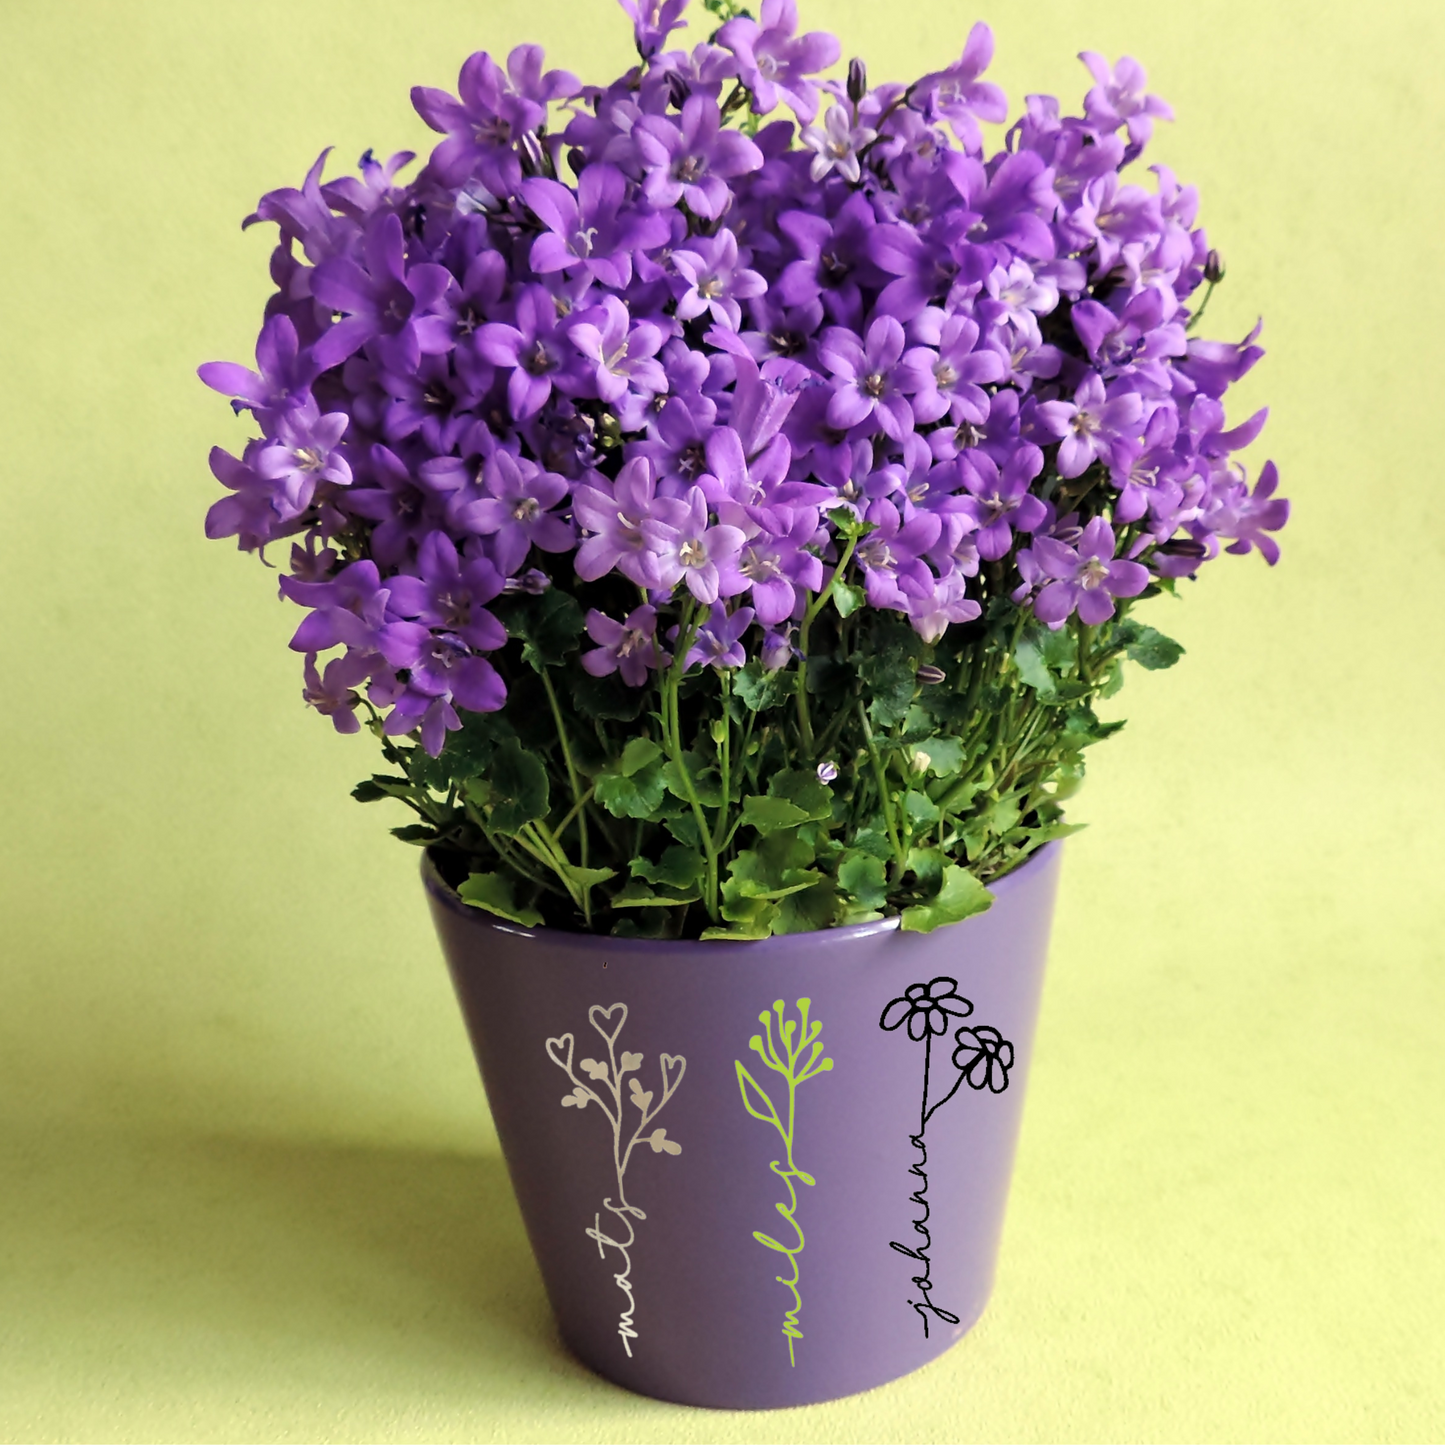 Blumentopf mit personalisierten Aufkleber - Blume mit Name - Abschiedsgeschenk für Lehrer / Erzieher